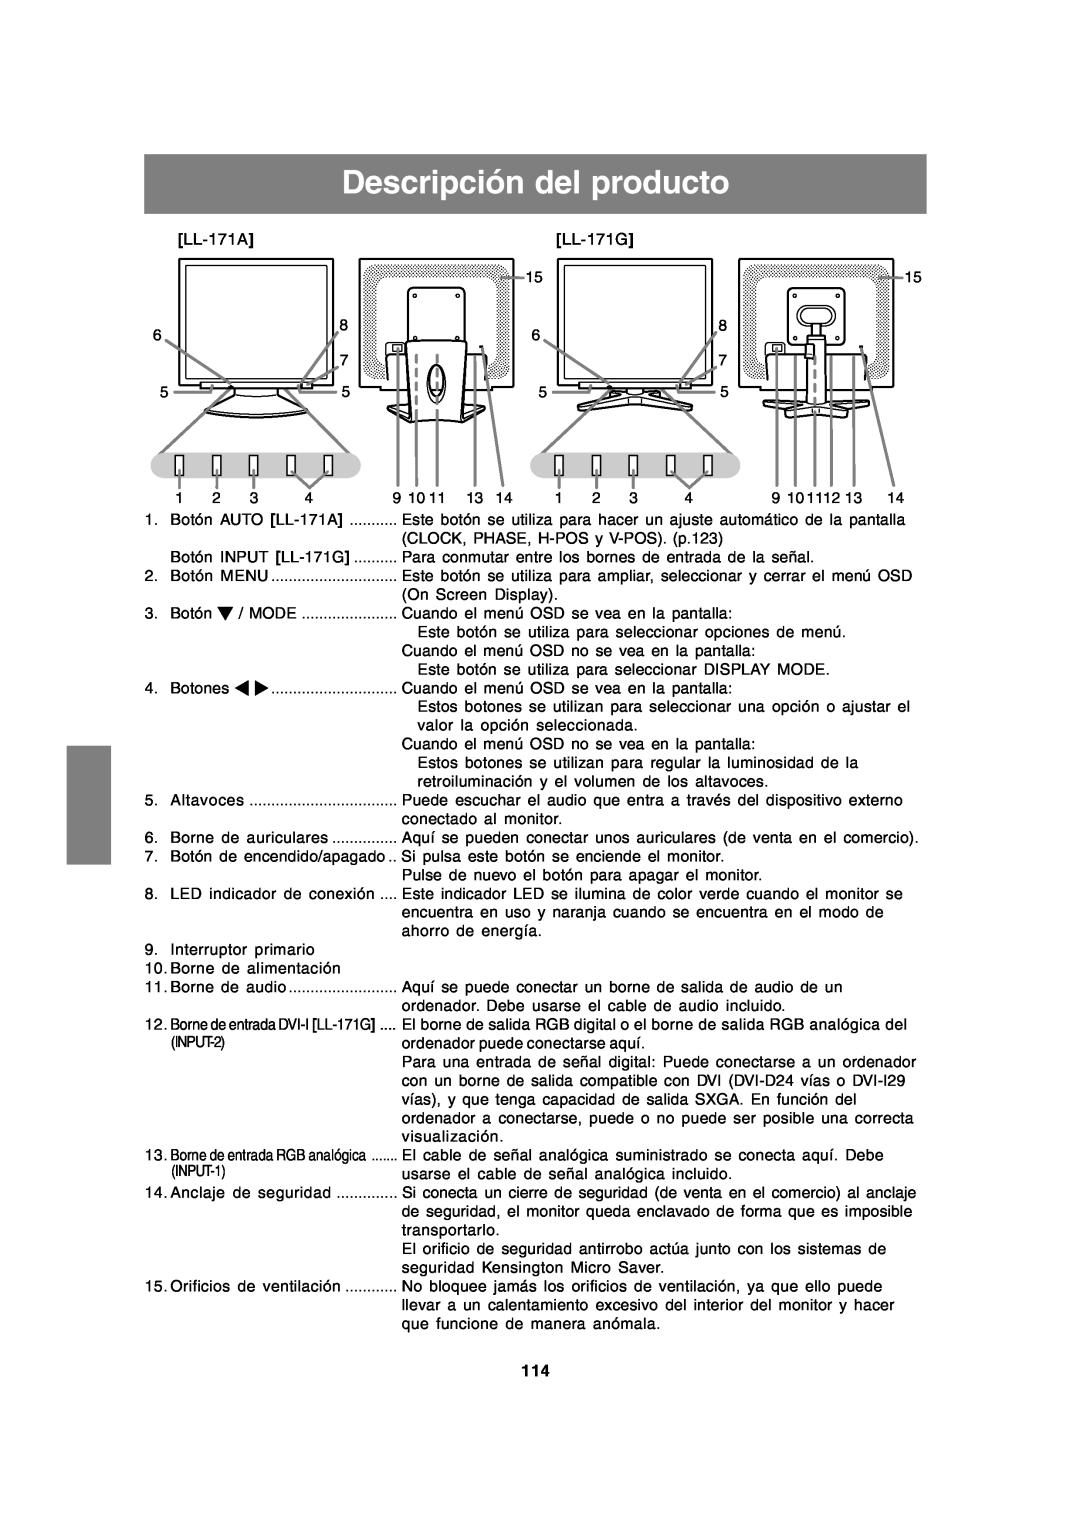 Sharp LL-171A LL-171G operation manual Descripción del producto 